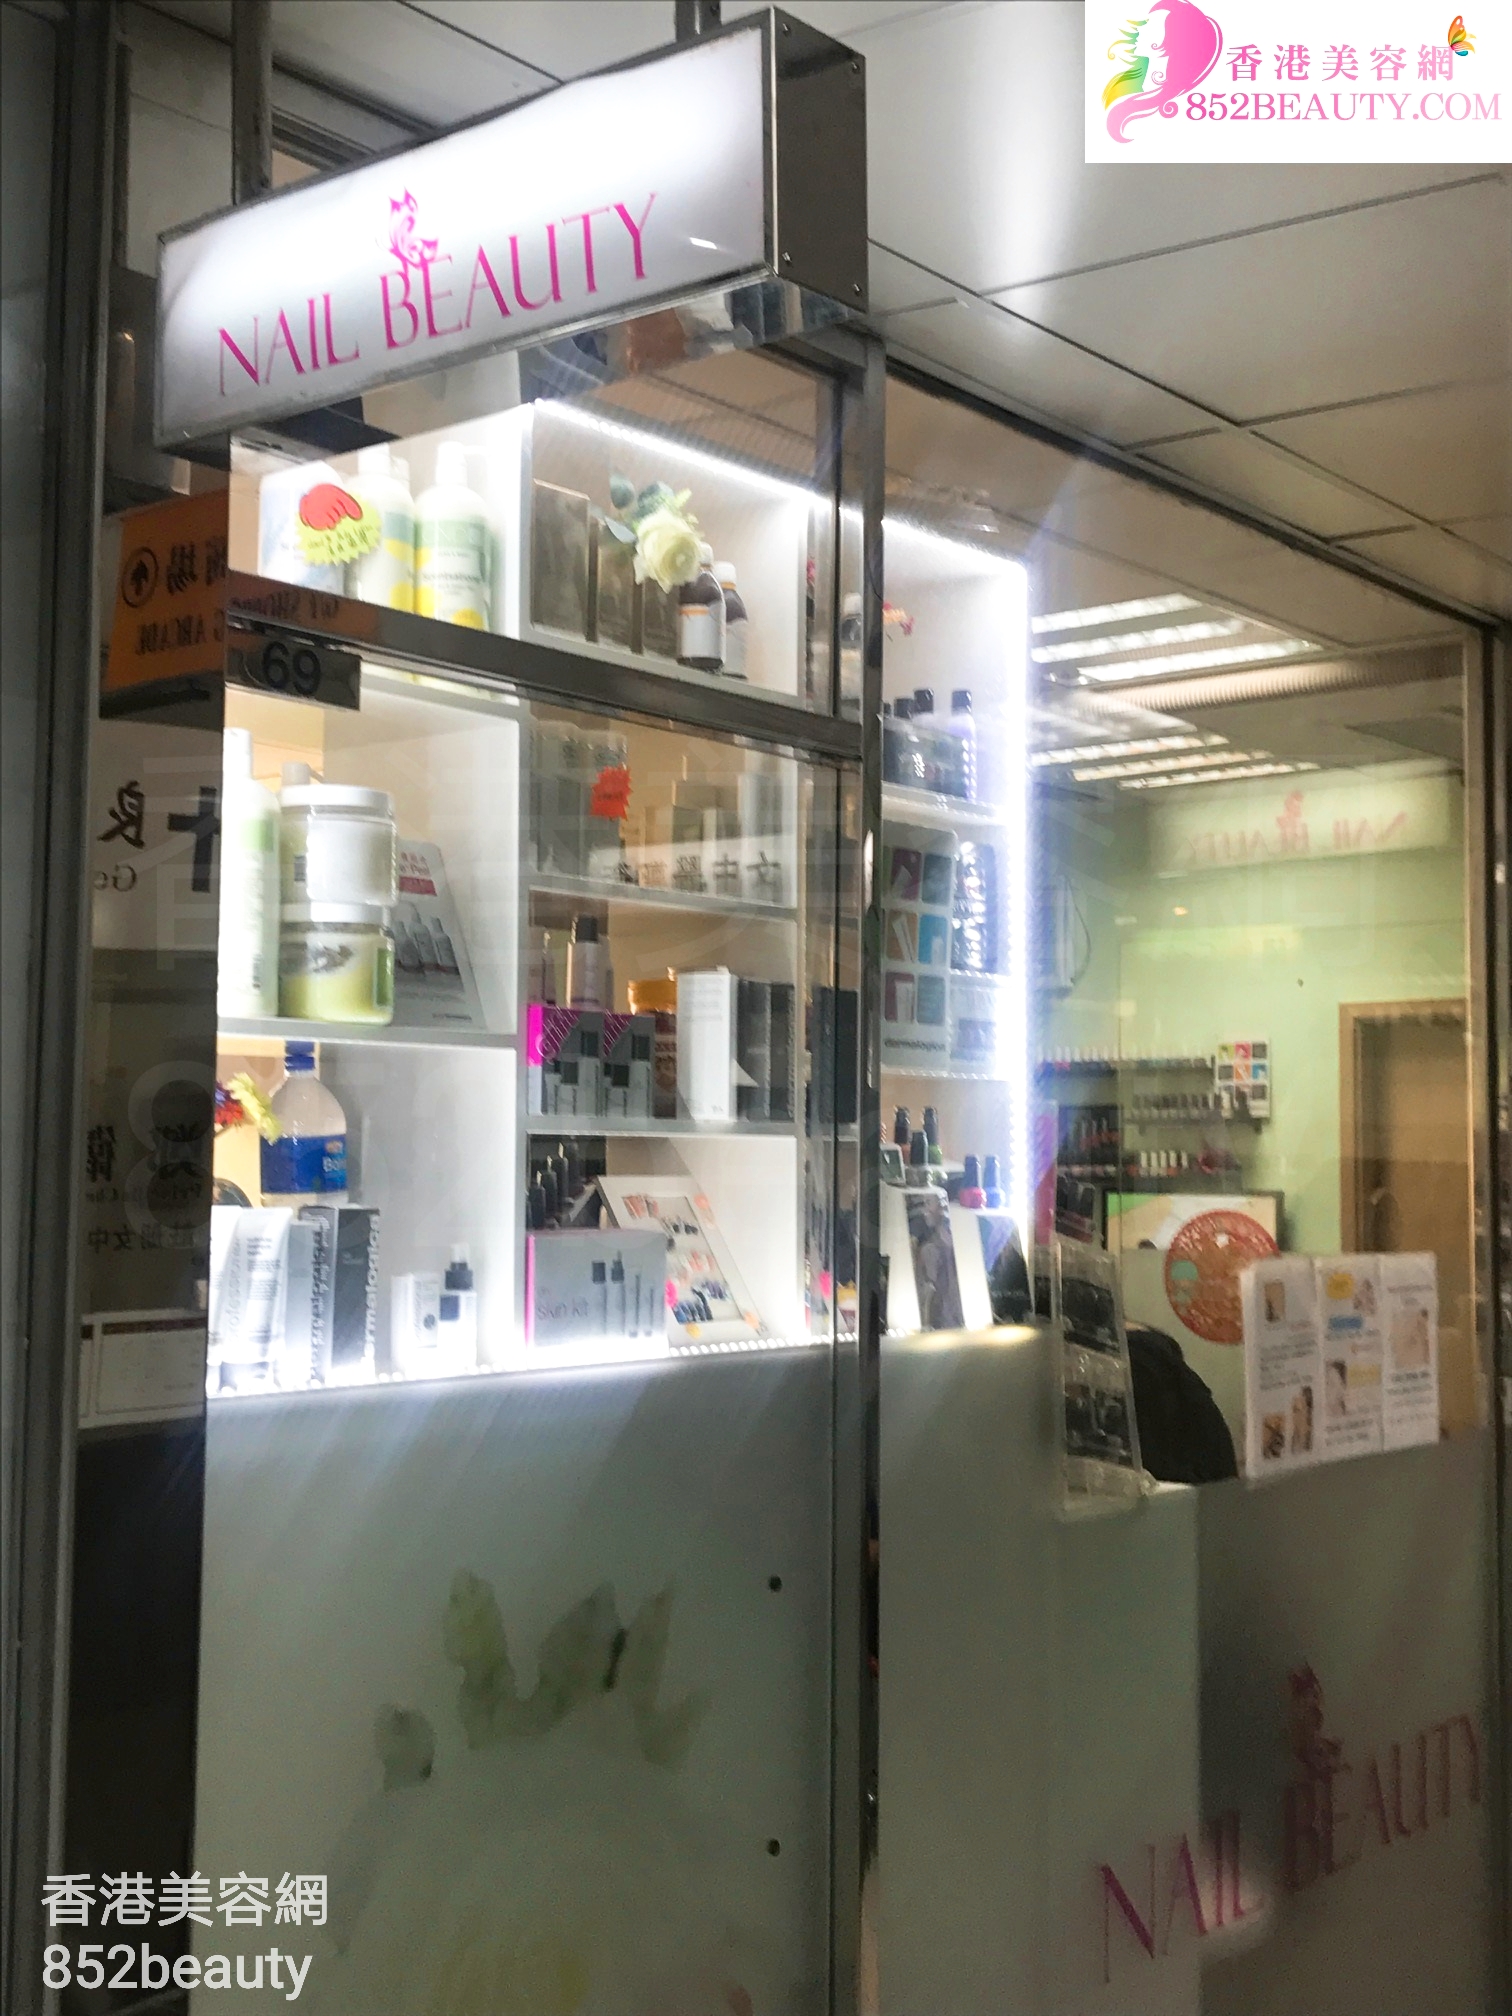 香港美容網 Hong Kong Beauty Salon 美容院 / 美容師: Nail Beauty